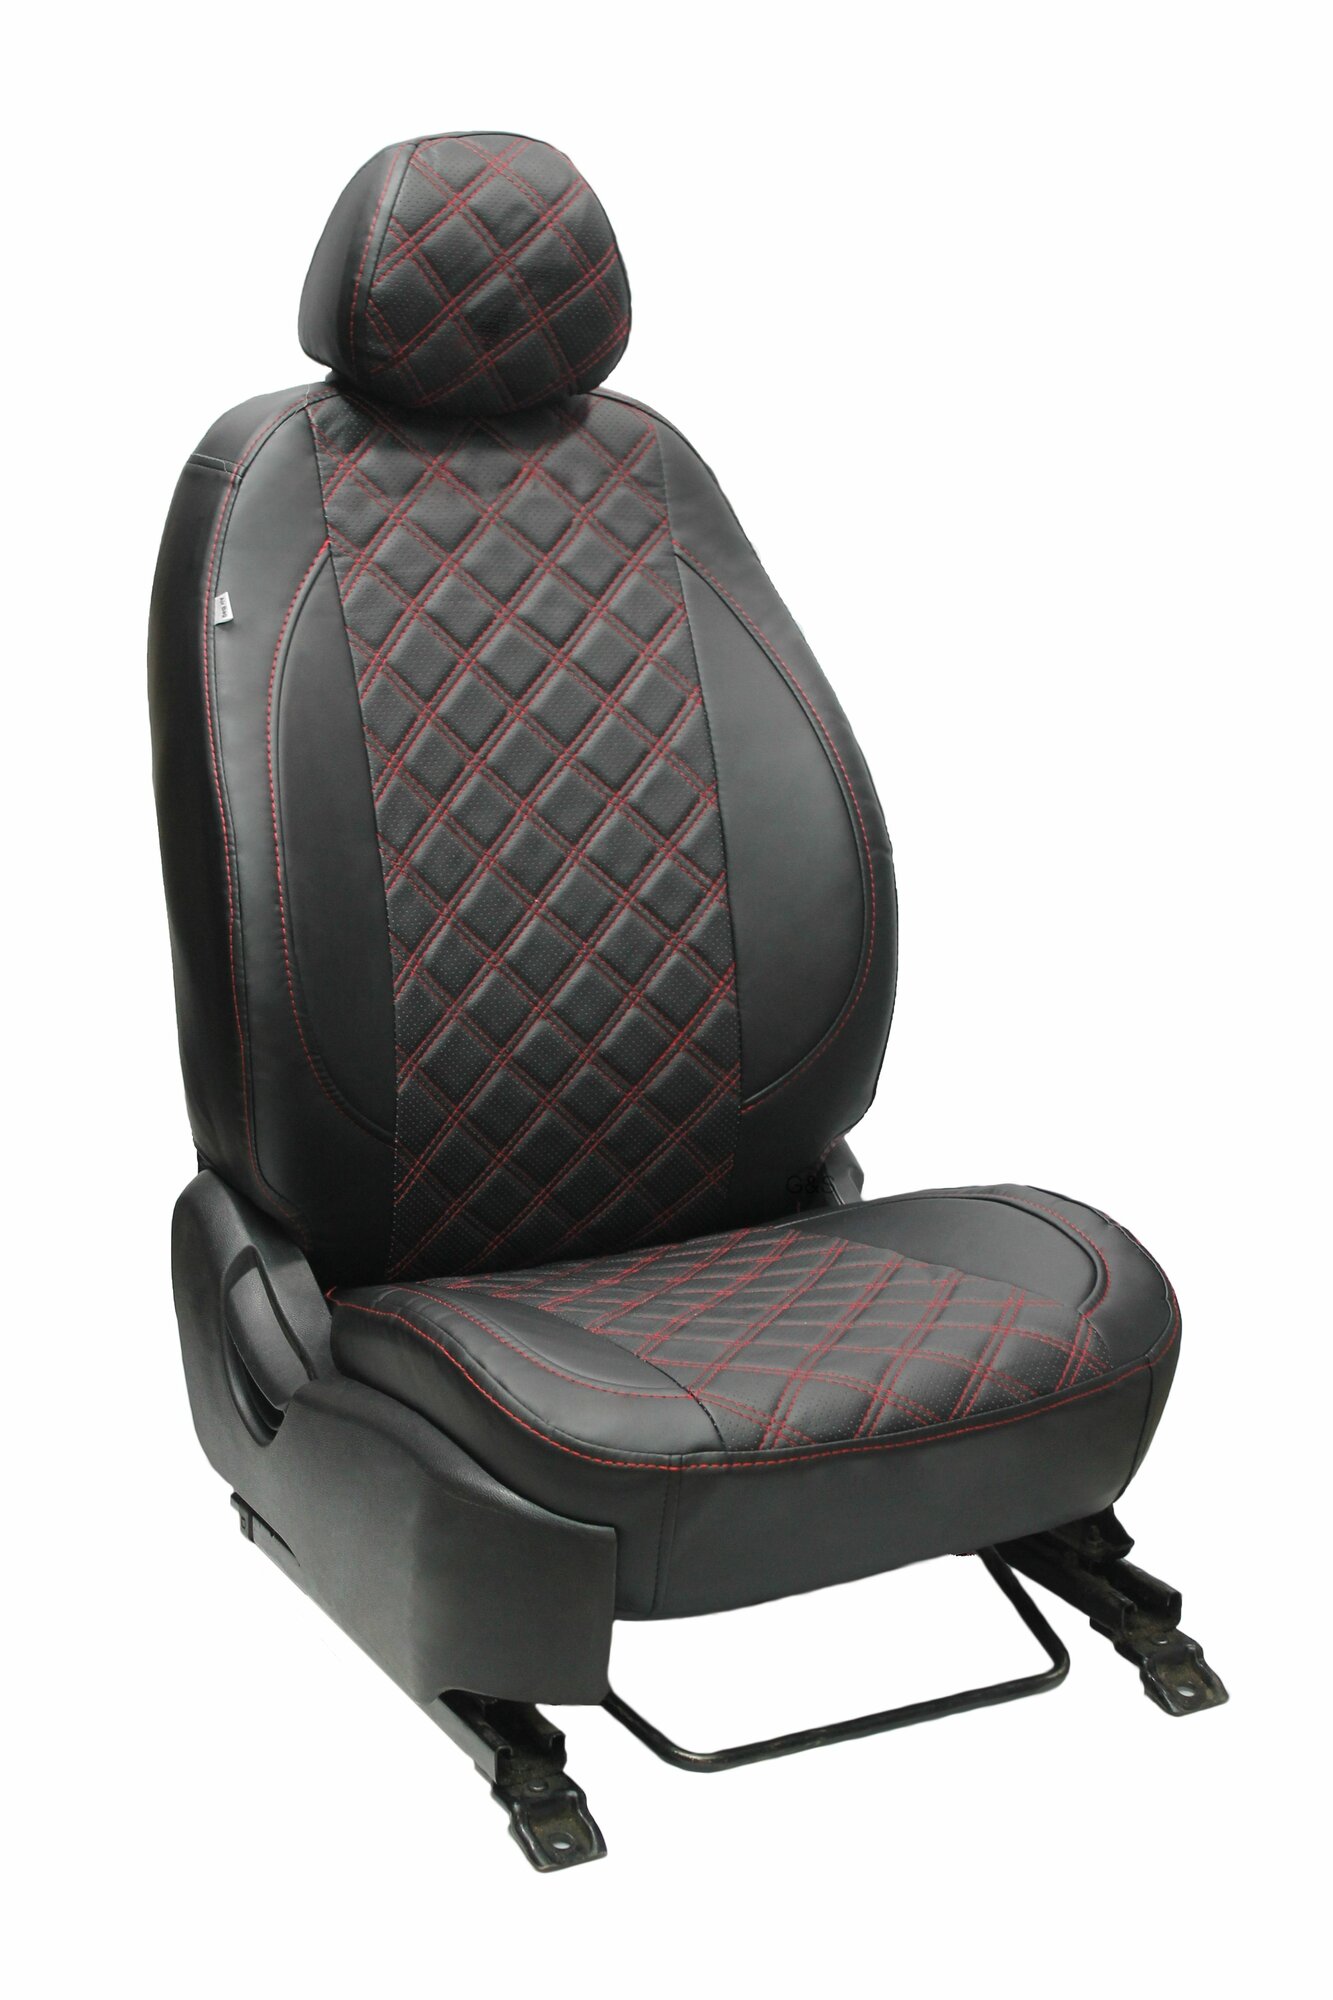 Чехлы для автомобильных сидений комплект Premium на FORD TRANSIT 3 места (2014-н. в.) фургон авточехлы модельные экокожа черный ромб красная нить (форд транзит)